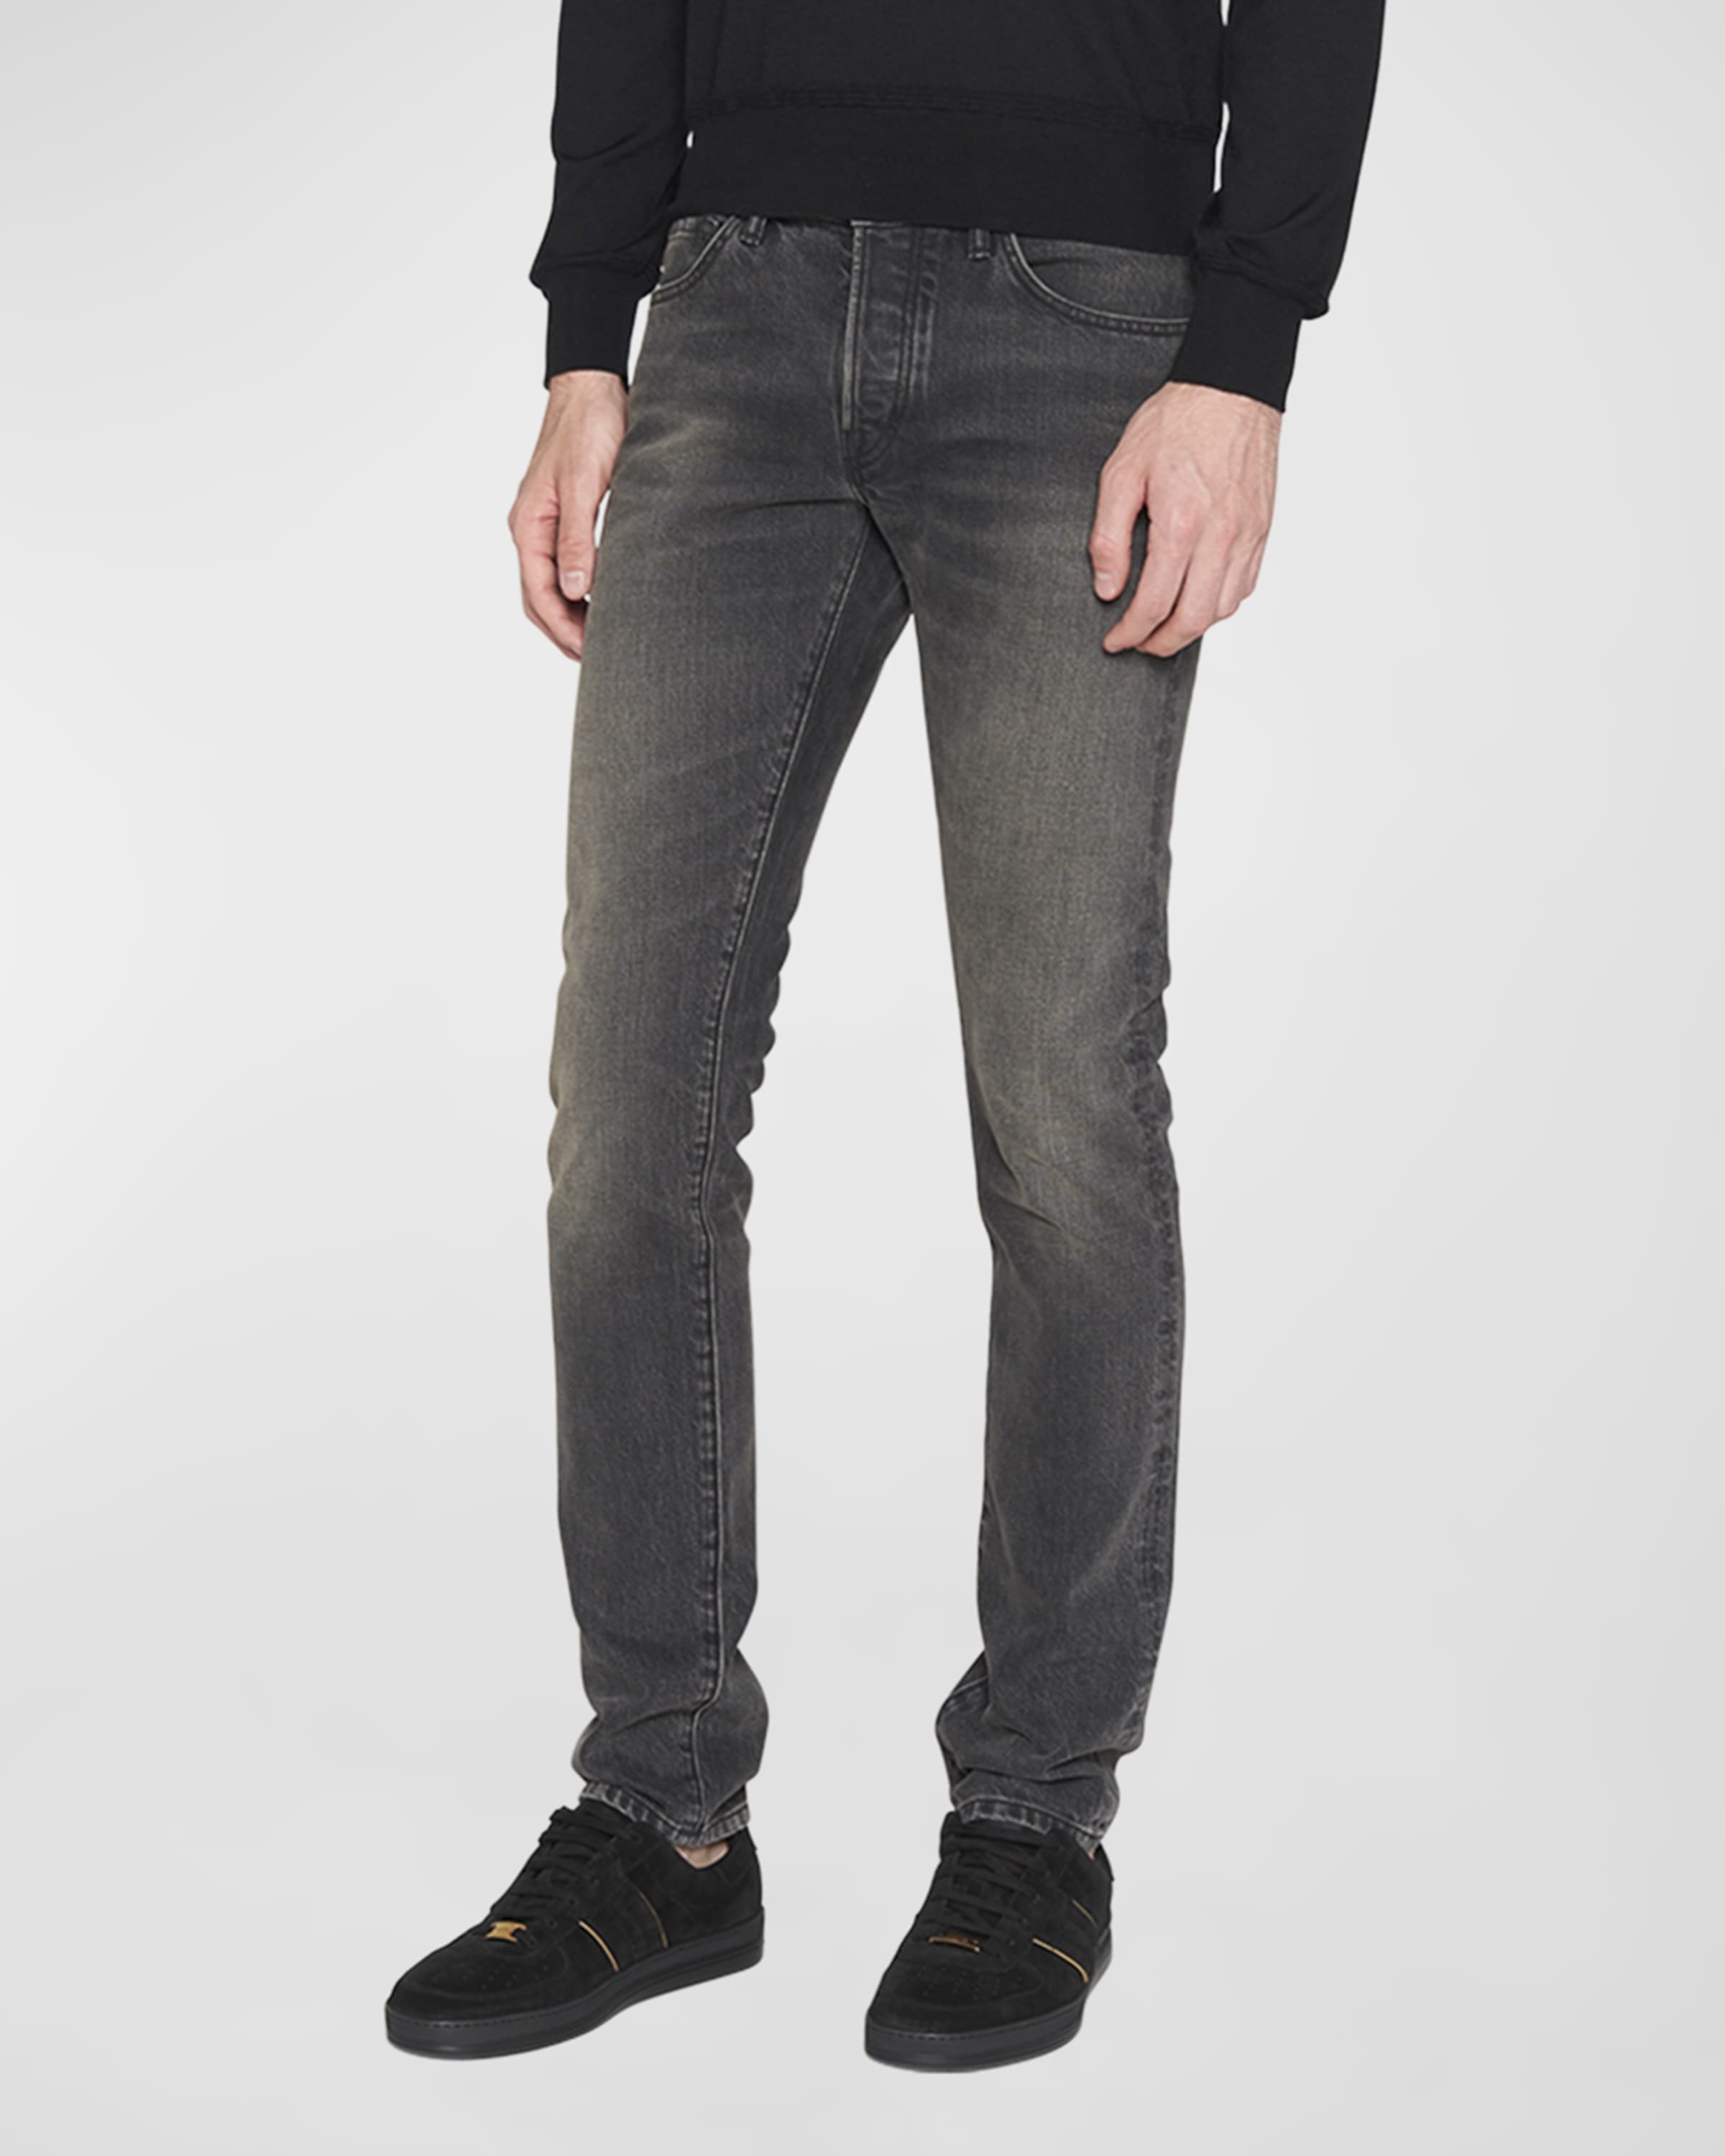 Men's Slim Fit Black Wash Jeans - 2